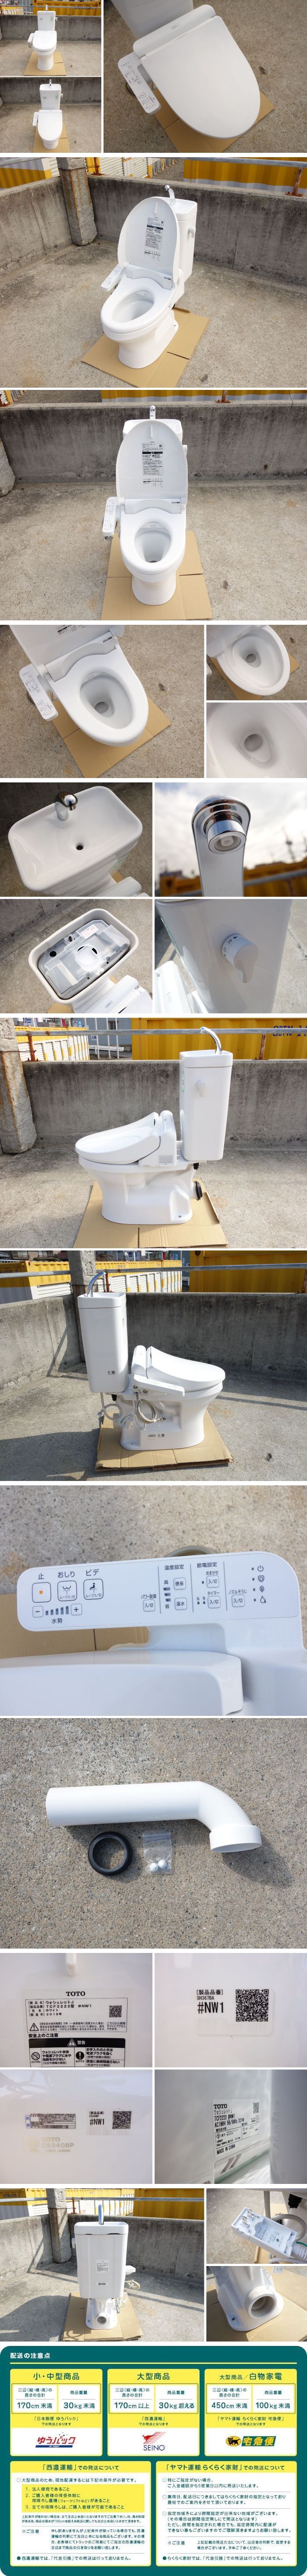 最大級D▼TOTO トイレ ウォシュレット シャワートイレ 便器 便座 タンク 便所 洋式 壁排水 電気便座 手洗いあり 2018年 (30250) 便器